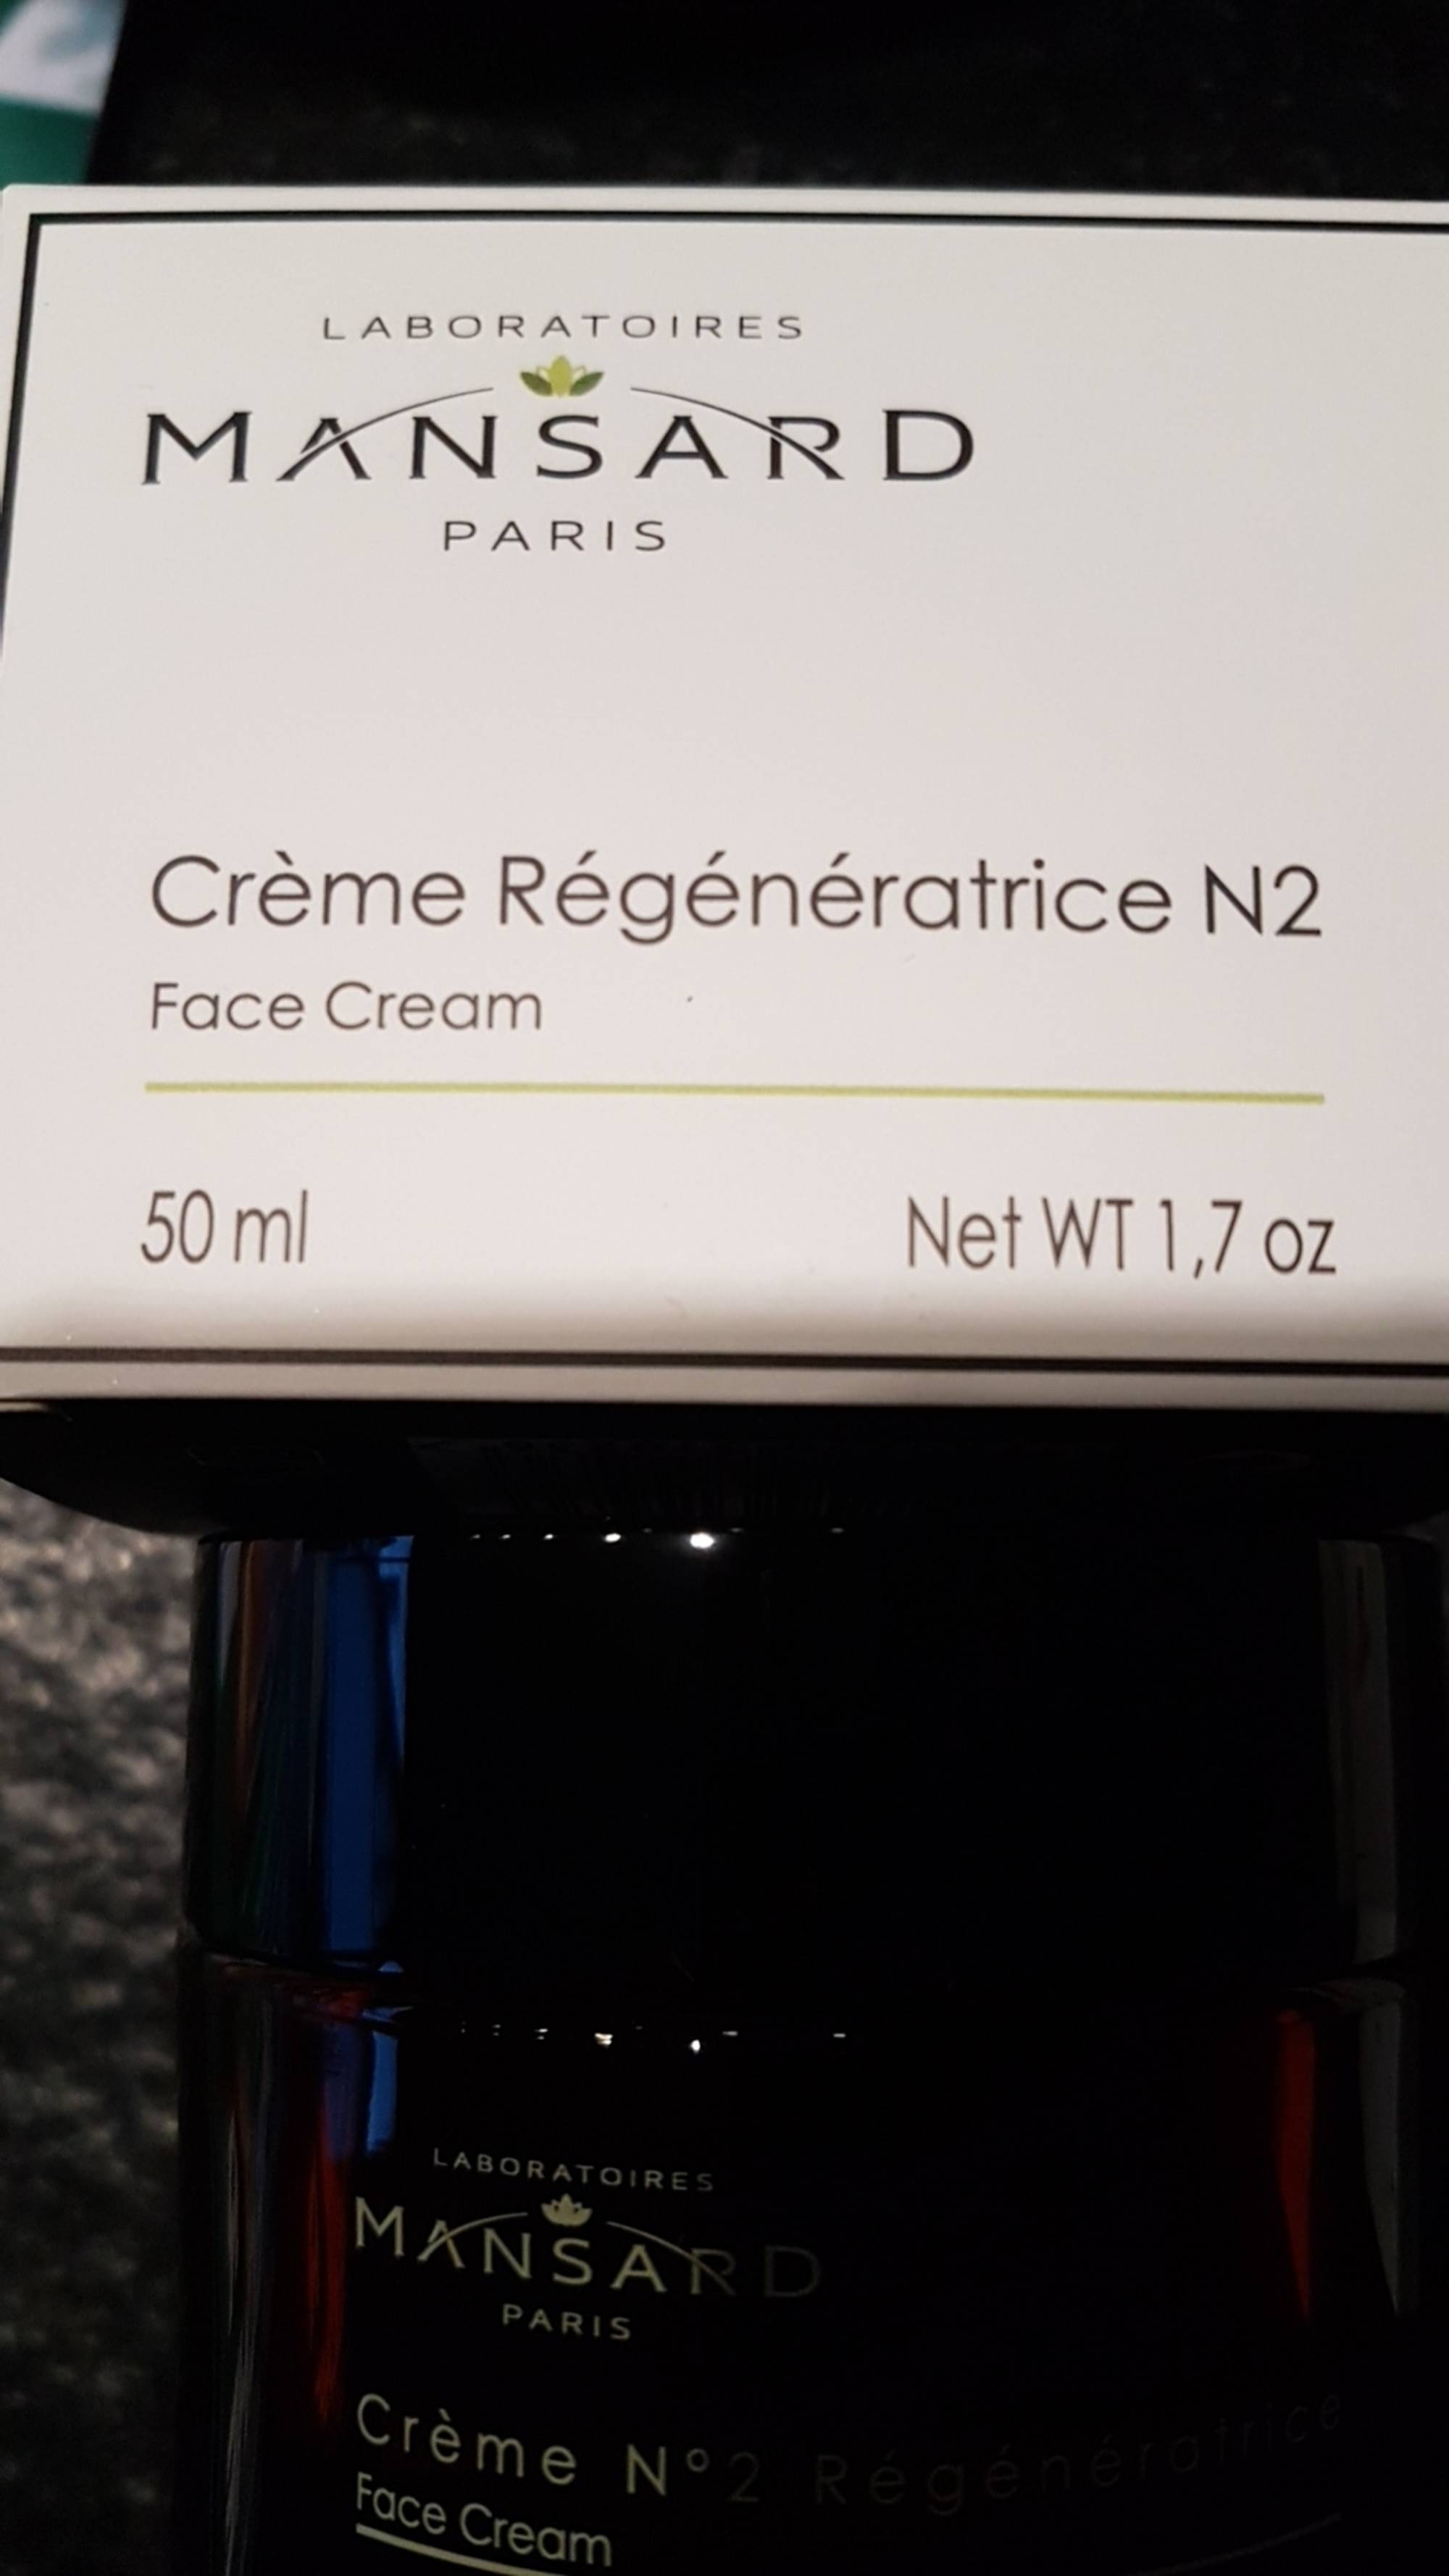 MANSARD - Crème régénératrice N2 - Face cream